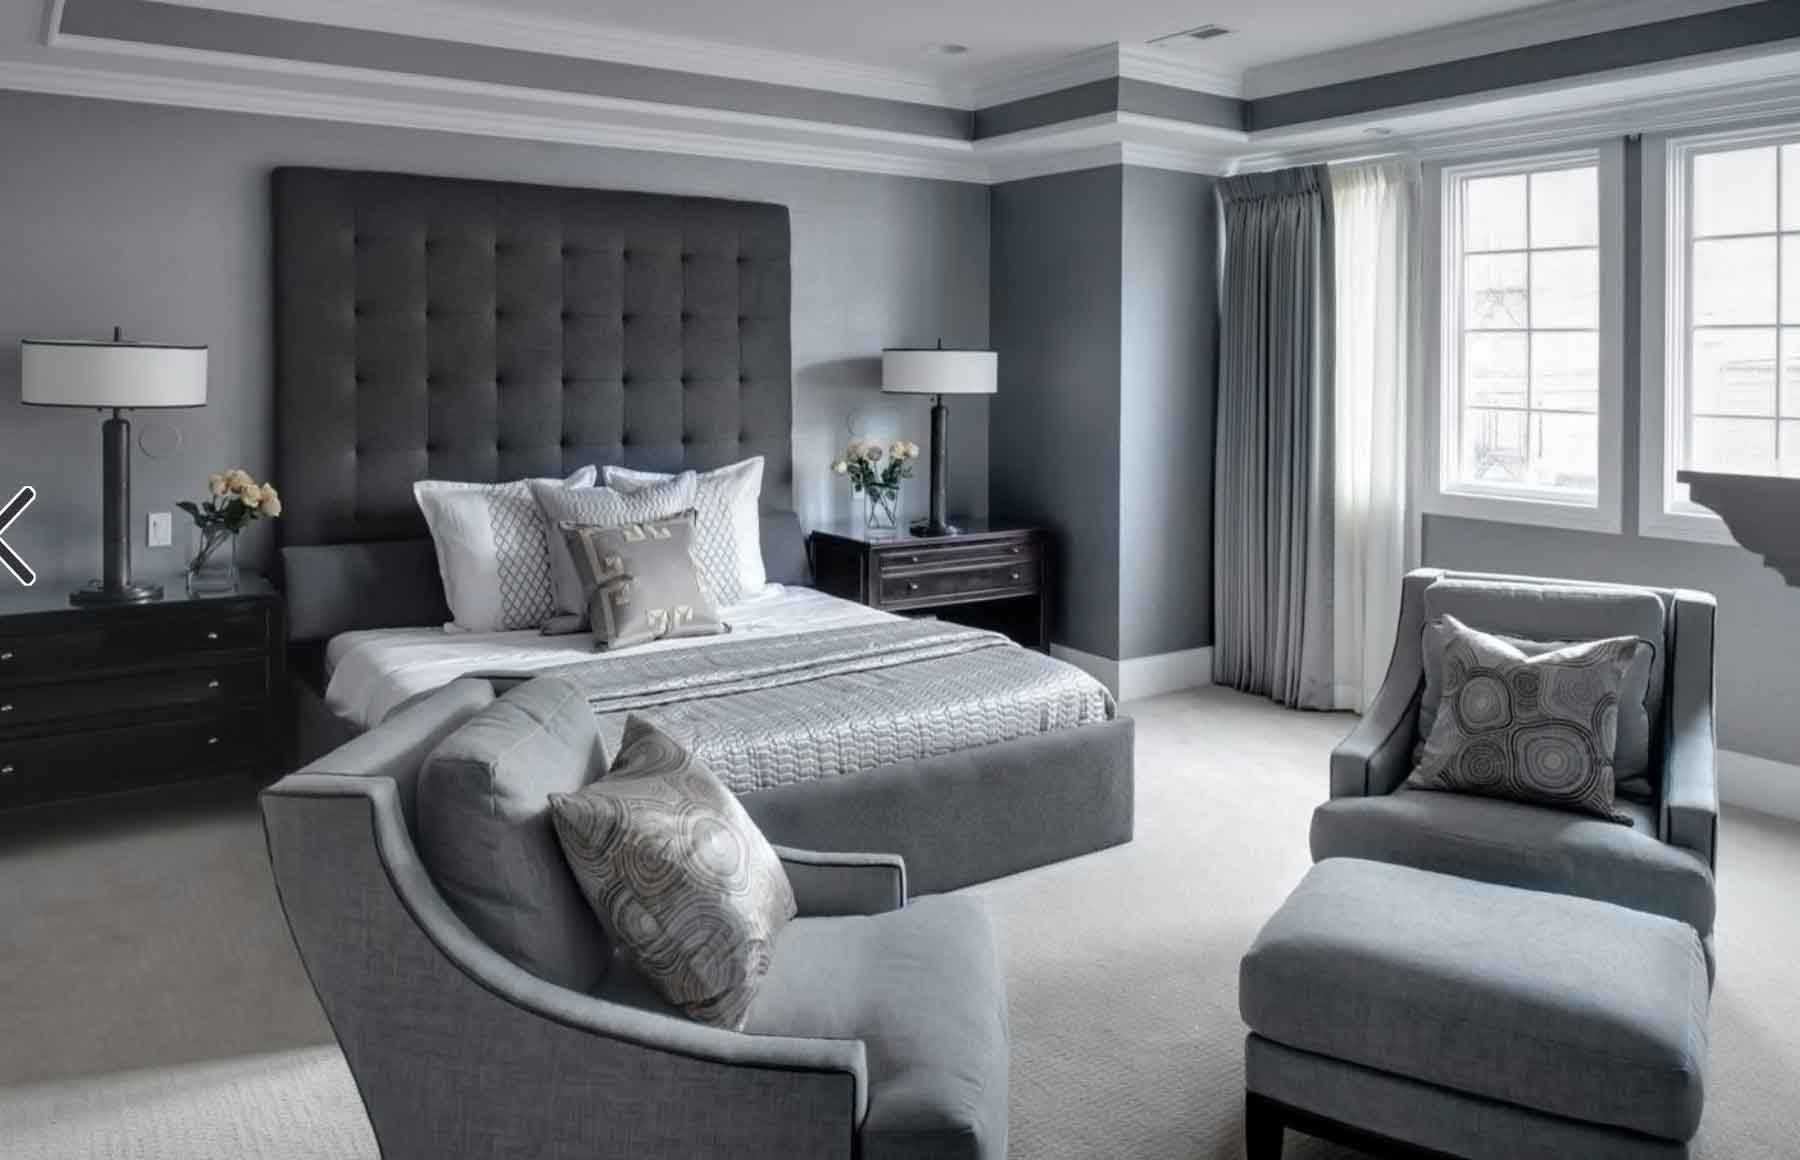 Дизайн спальни в серых тонах: как это может выглядеть и что сделать, чтобы интерьер не был скучным и унылым